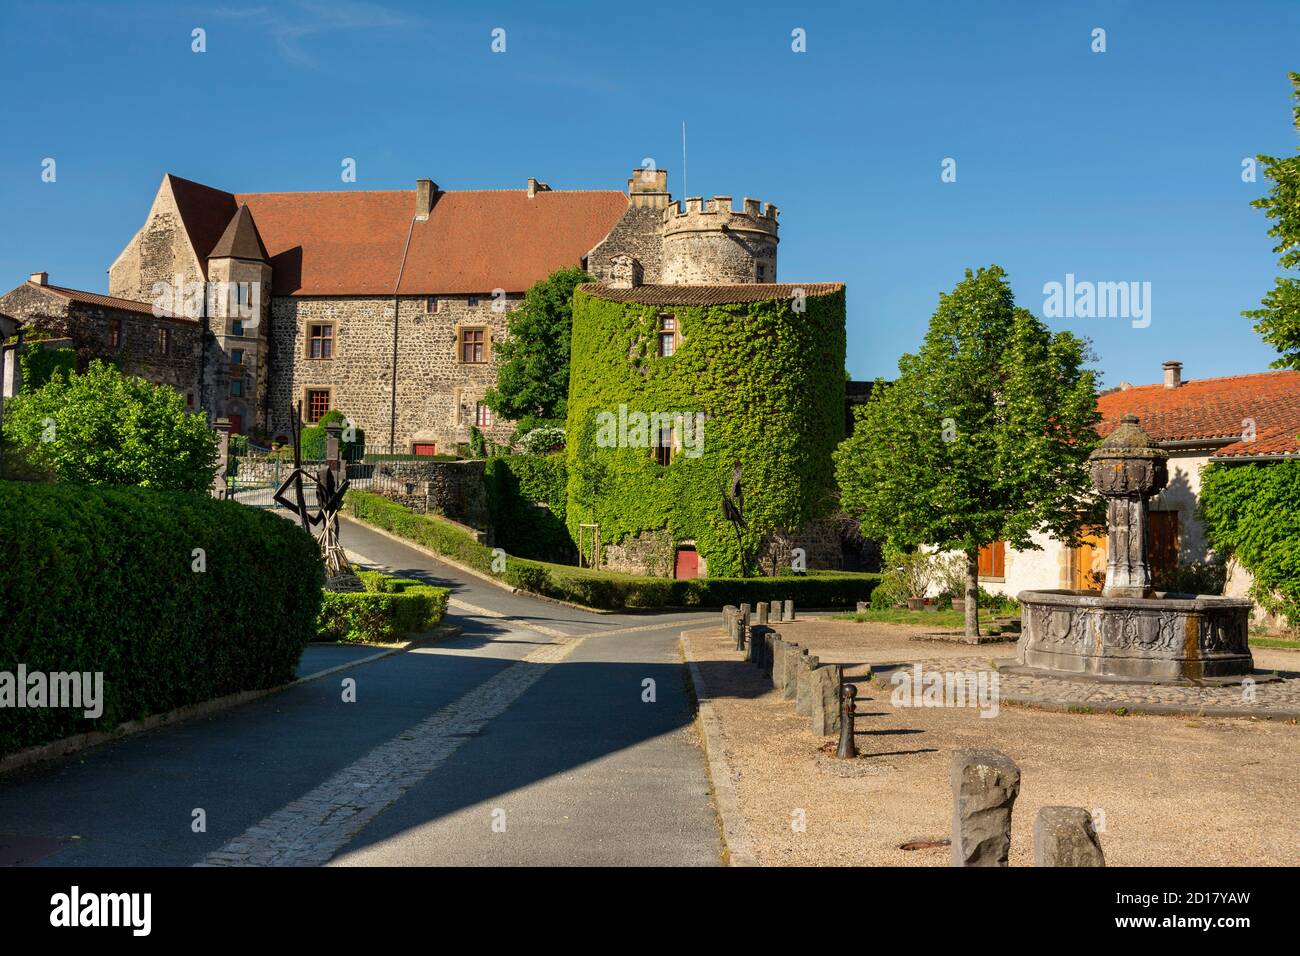 Fontaine et château, Saint Saturnin, département du Puy de Dôme, Auvergne-Rhône-Alpes, France, Europe Banque D'Images